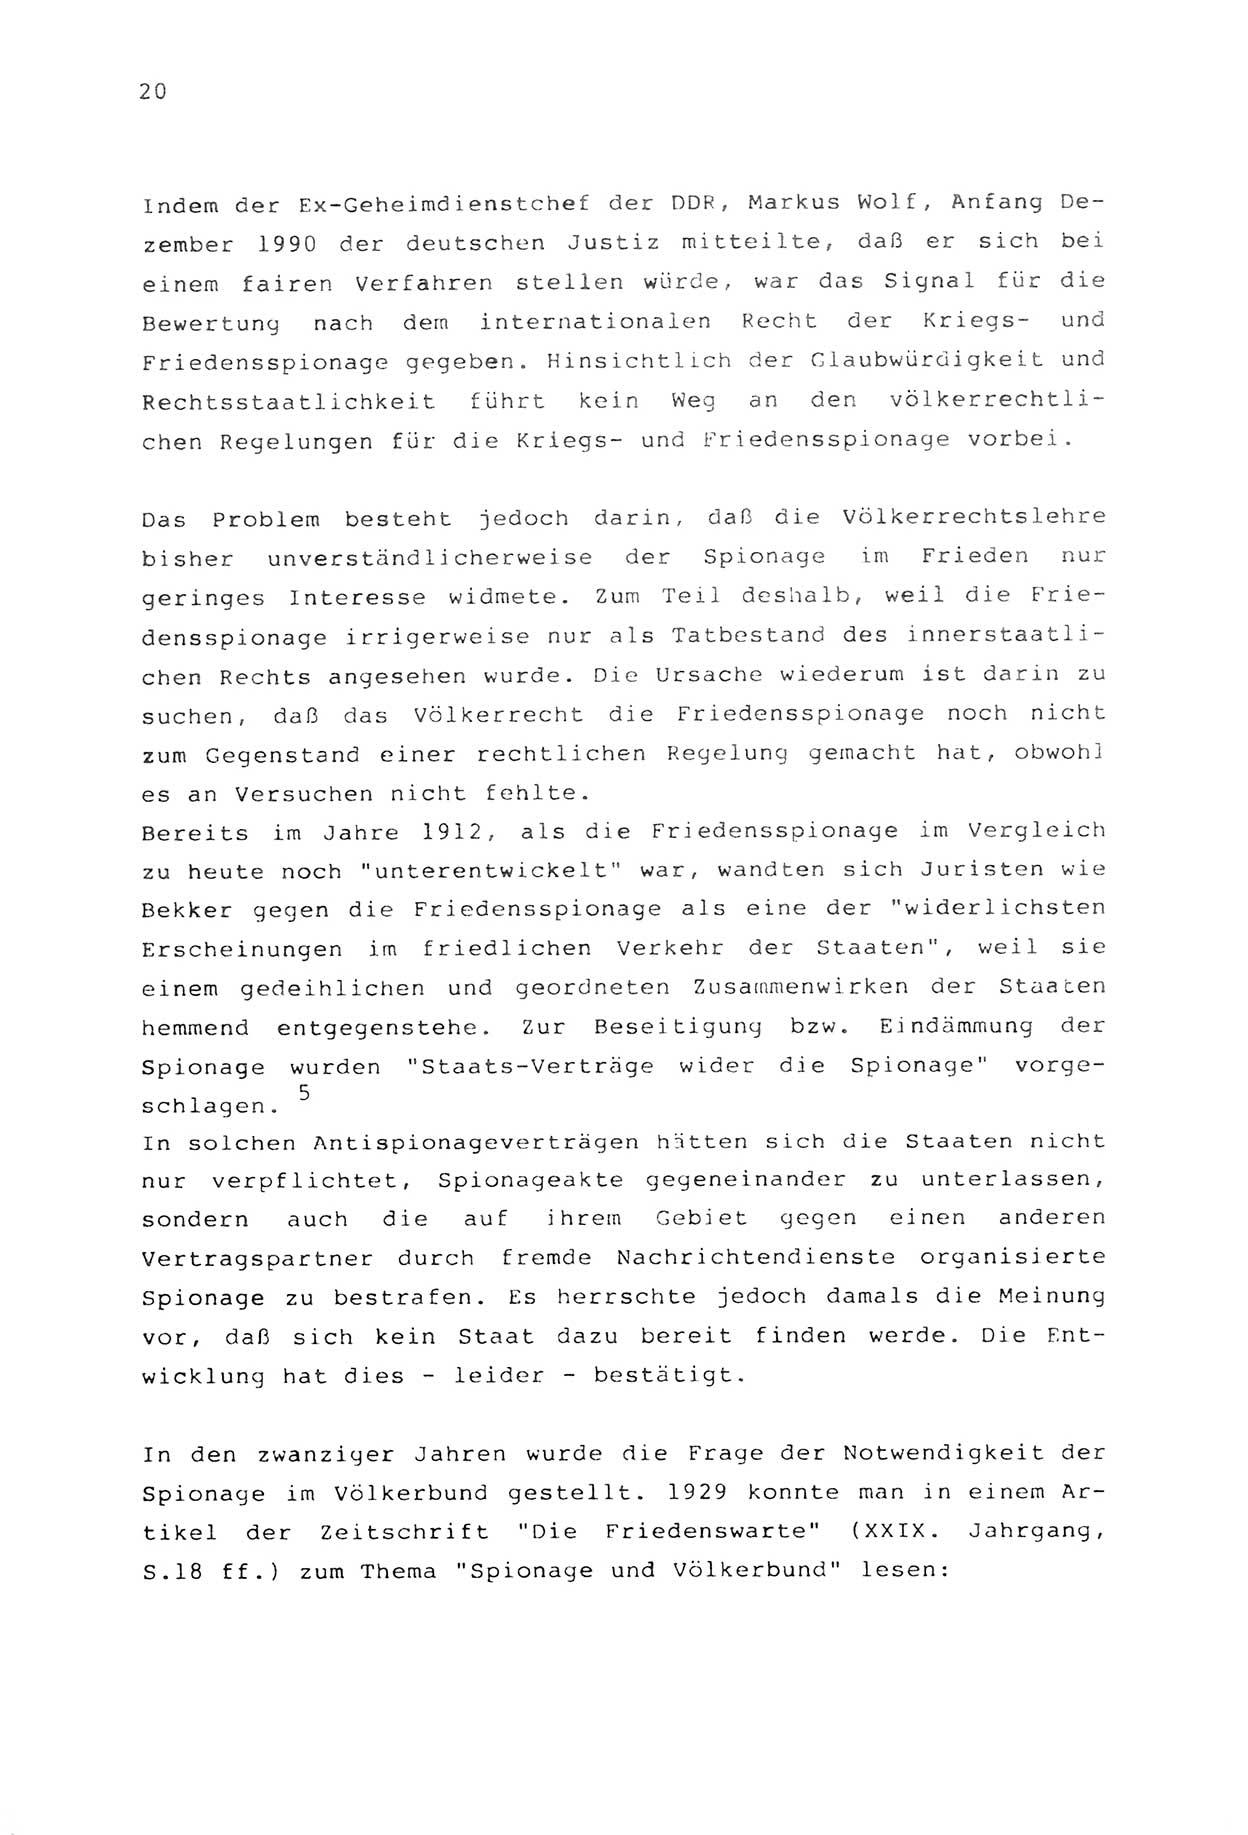 Zwie-Gespräch, Beiträge zur Aufarbeitung der Stasi-Vergangenheit [Deutsche Demokratische Republik (DDR)], Ausgabe Nr. 2, Berlin 1991, Seite 20 (Zwie-Gespr. Ausg. 2 1991, S. 20)